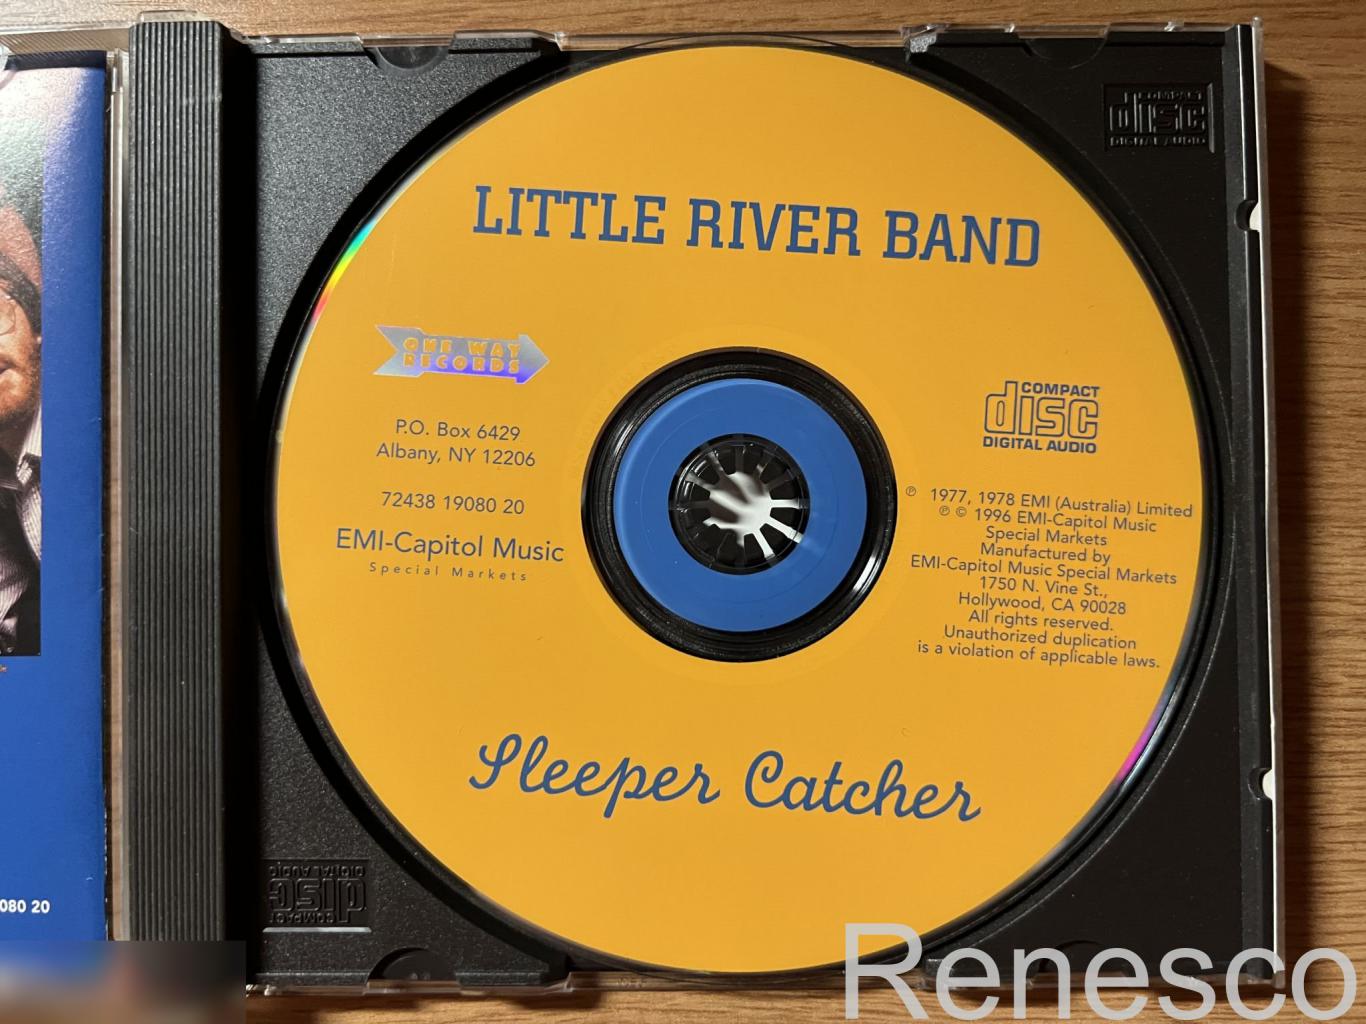 Little River Band – Sleeper Catcher (USA) (1996) (Reissue) 4